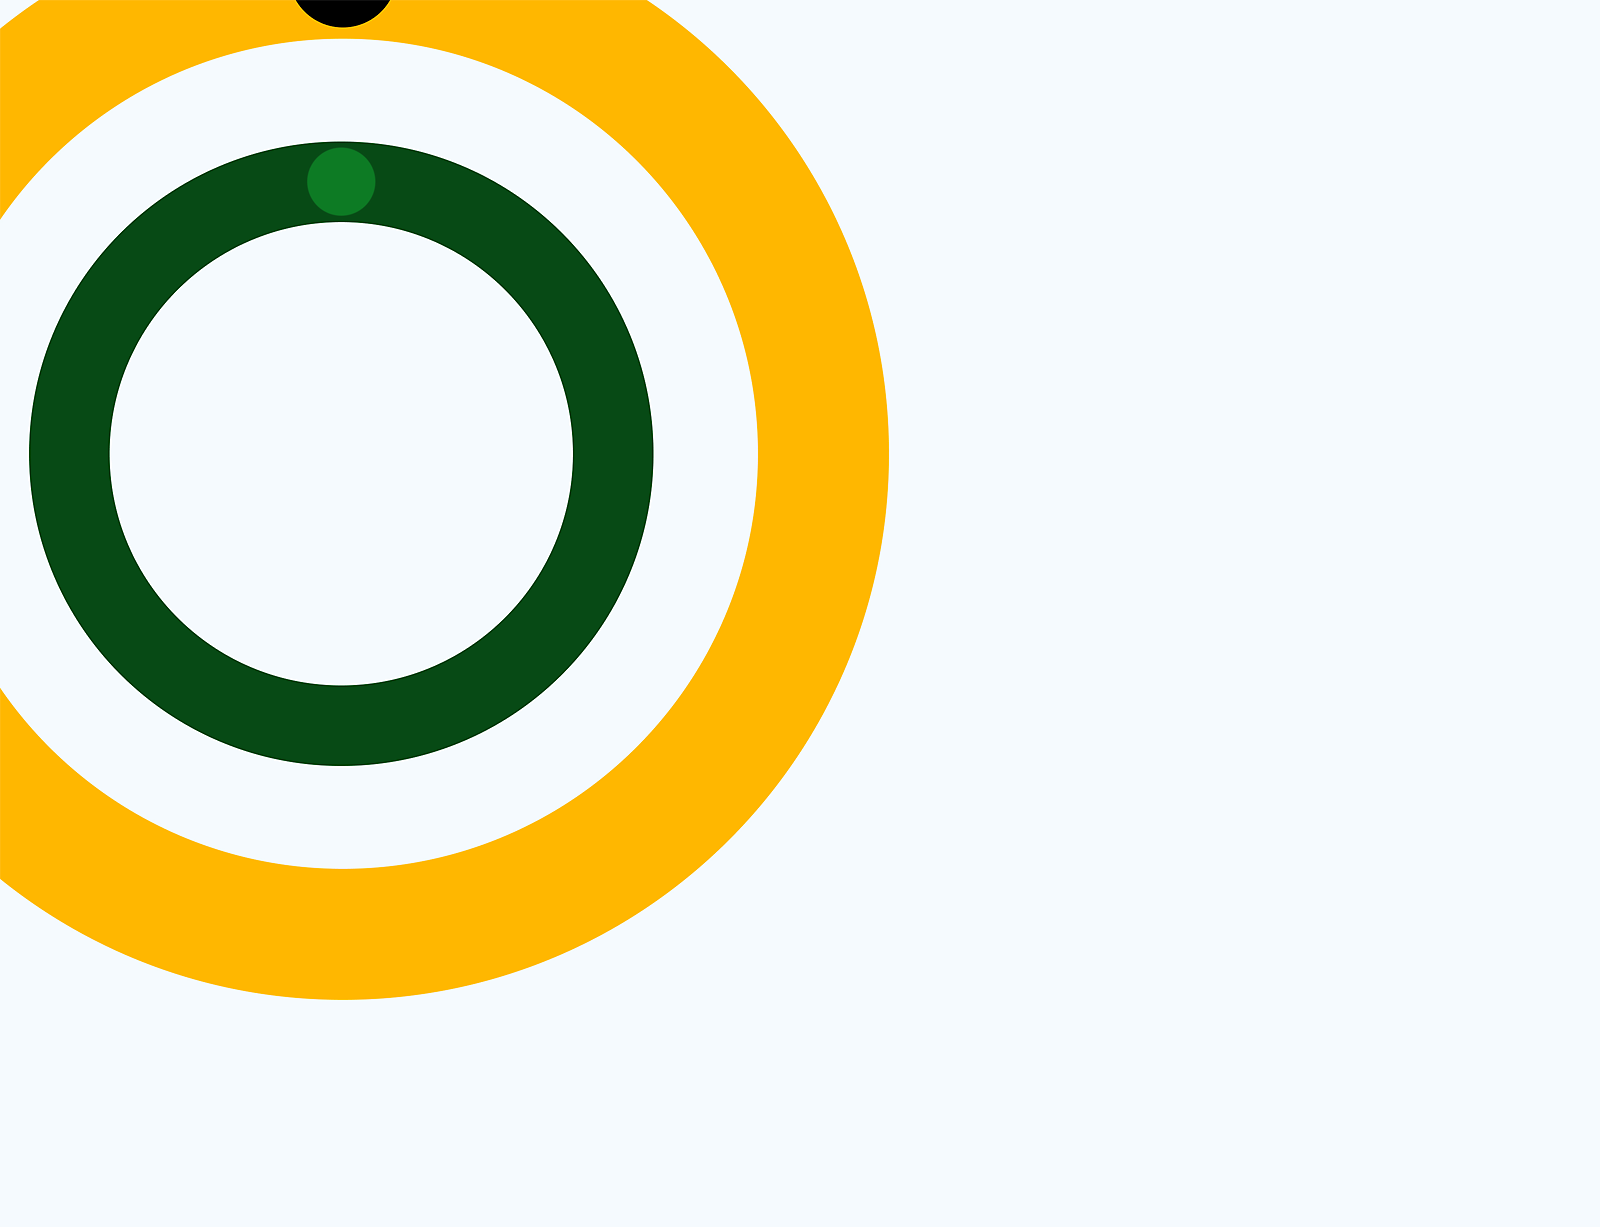 Abstrakte Grafik mittiger Kreise in grün, gelb und weiß auf einen grauen Hintergrund.